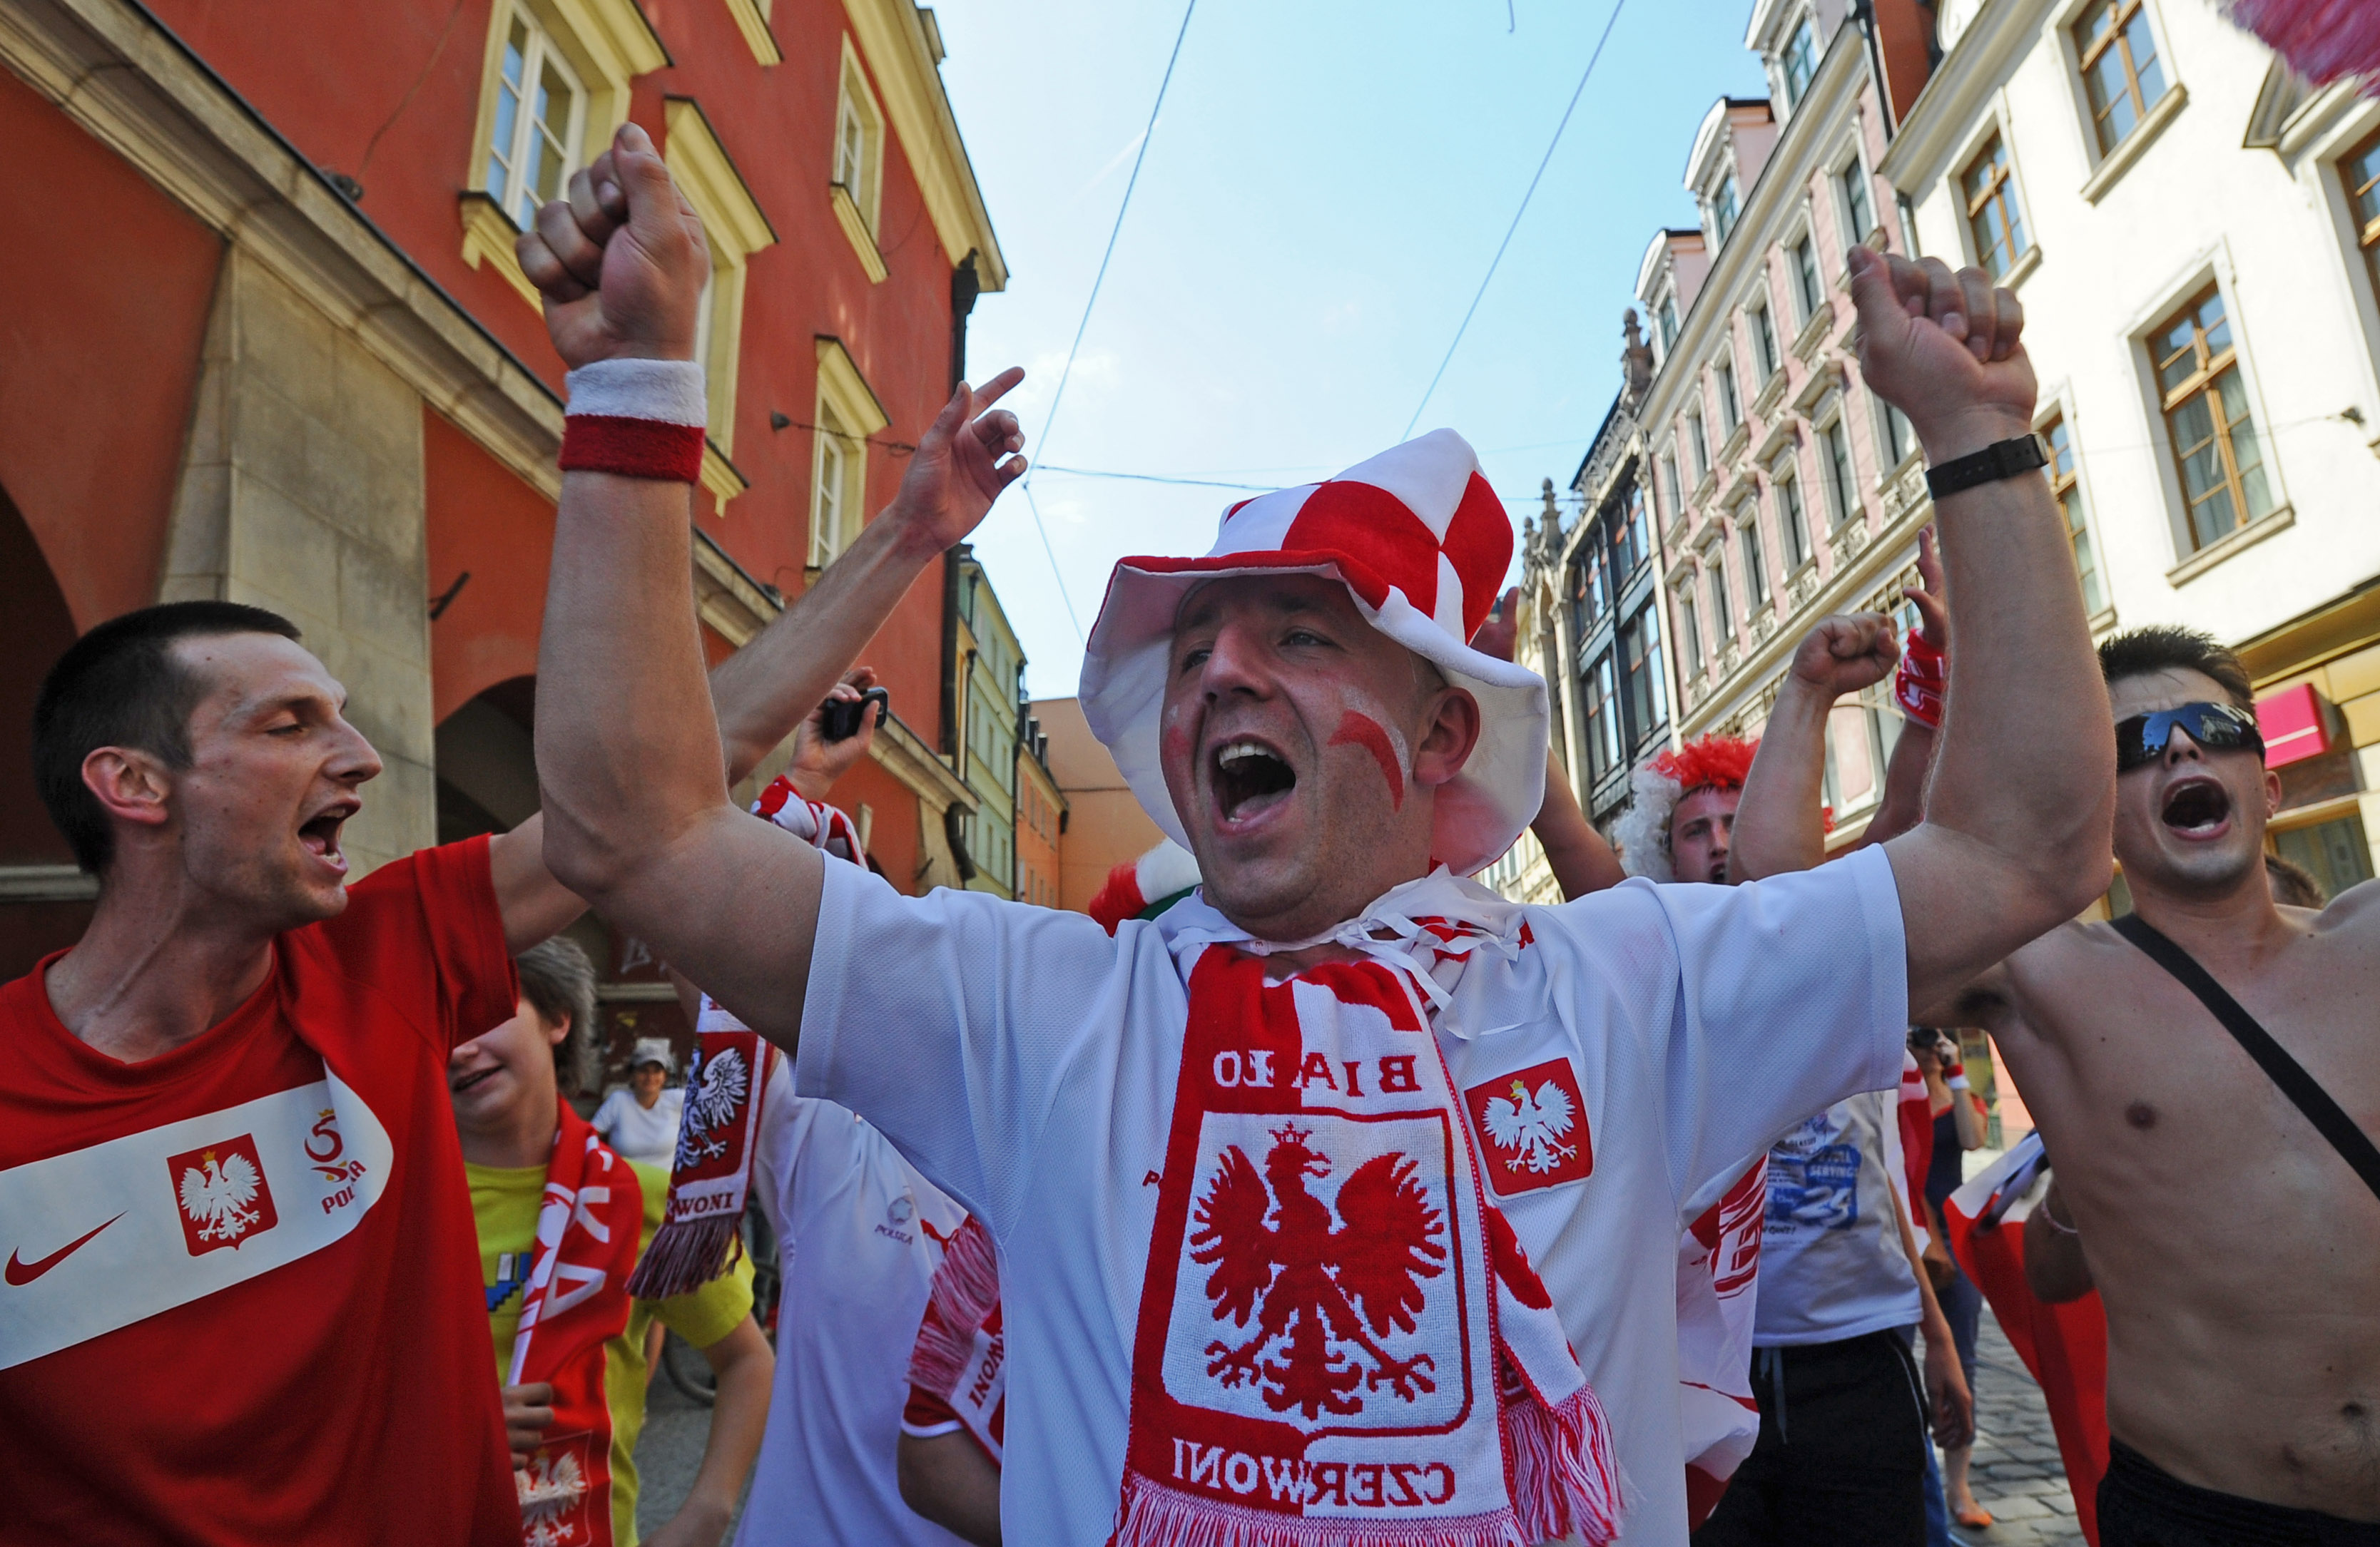 Tiotusentals polska fans har EM-laddat i Wroclaw under dagen.